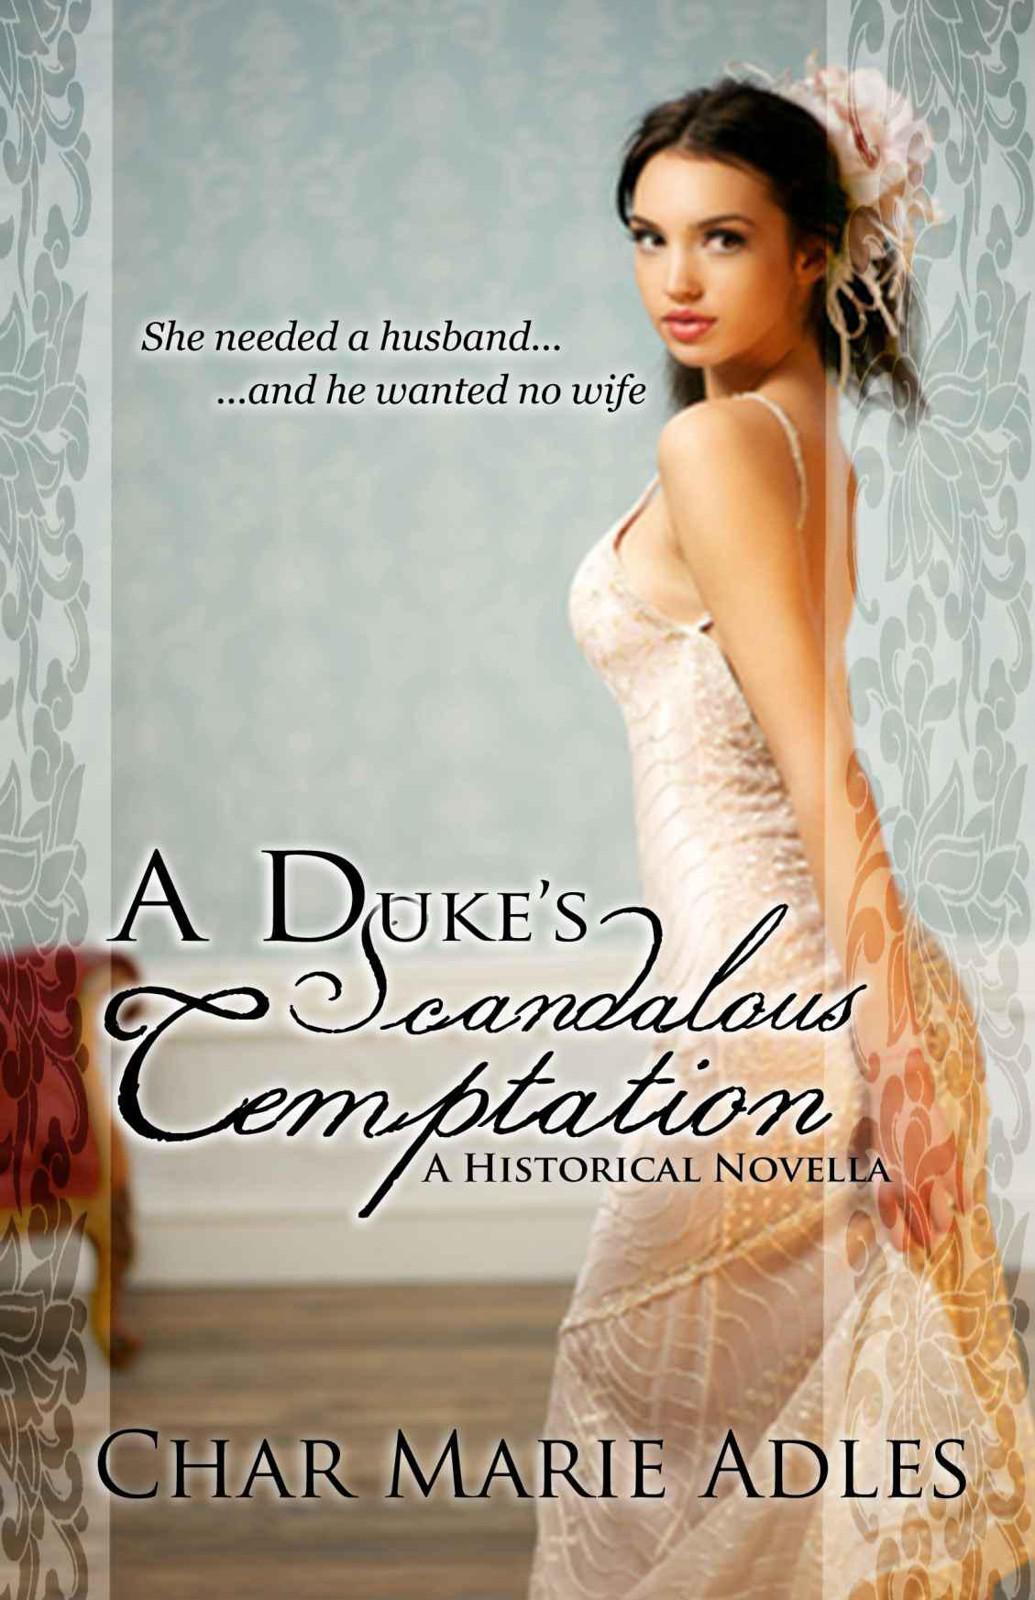 A Duke's Scandalous Temptation by Char Marie Adles